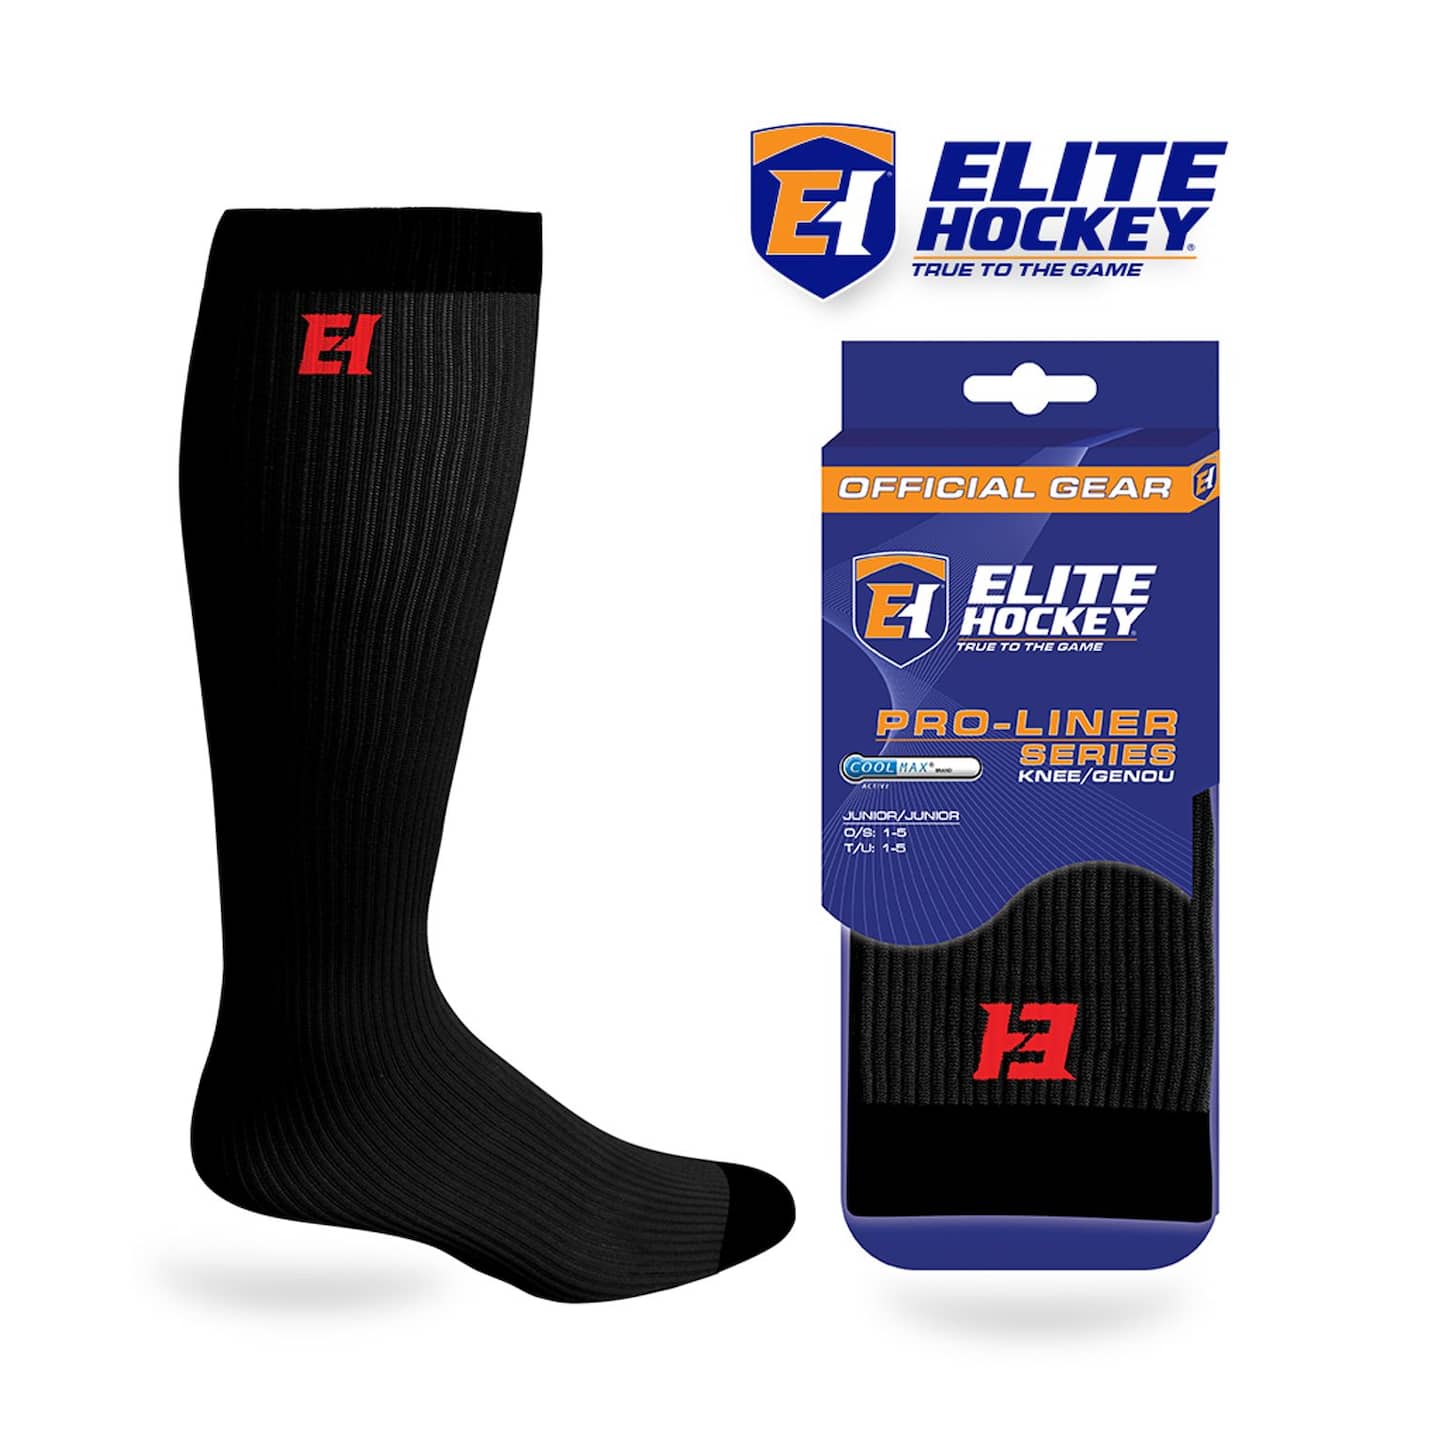 Hockey skate socks - Hockey Store